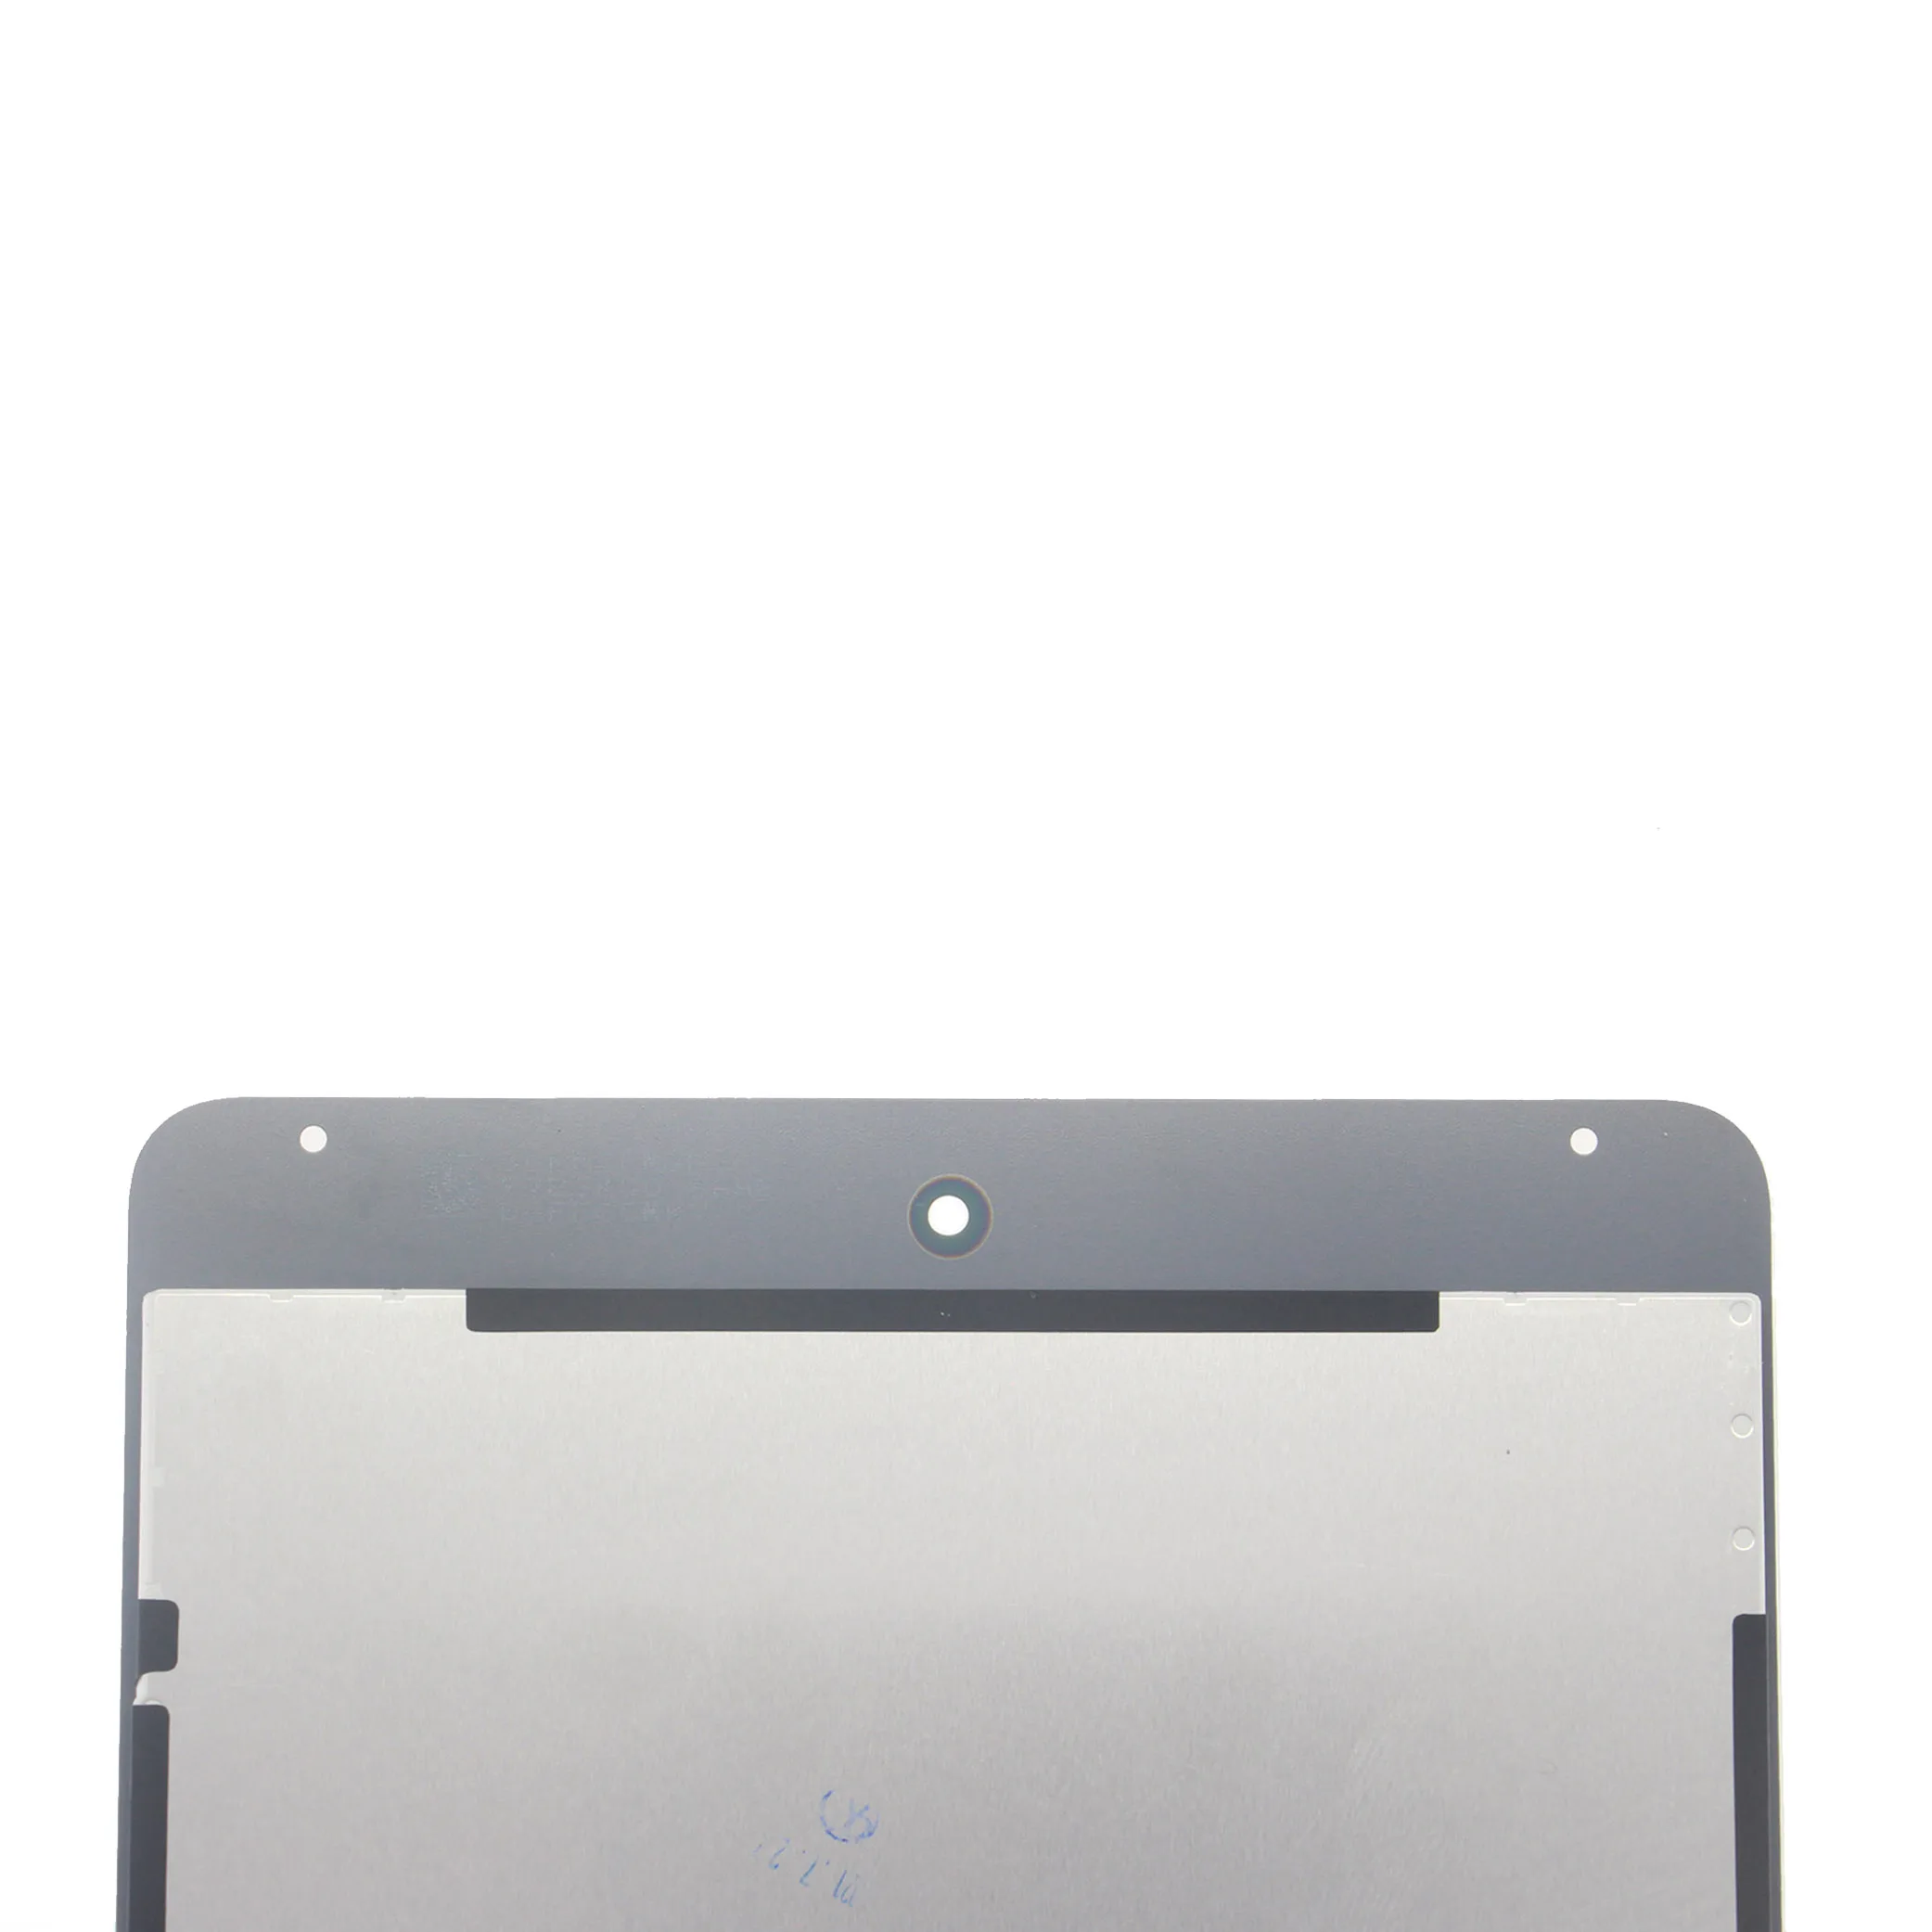 ЖК-дисплей для Apple iPad Mini 4, сенсорная панель в сборе, замена для iPad mini 4 A1538 A1550, ЖК-дисплей Digitzer Изображение 1